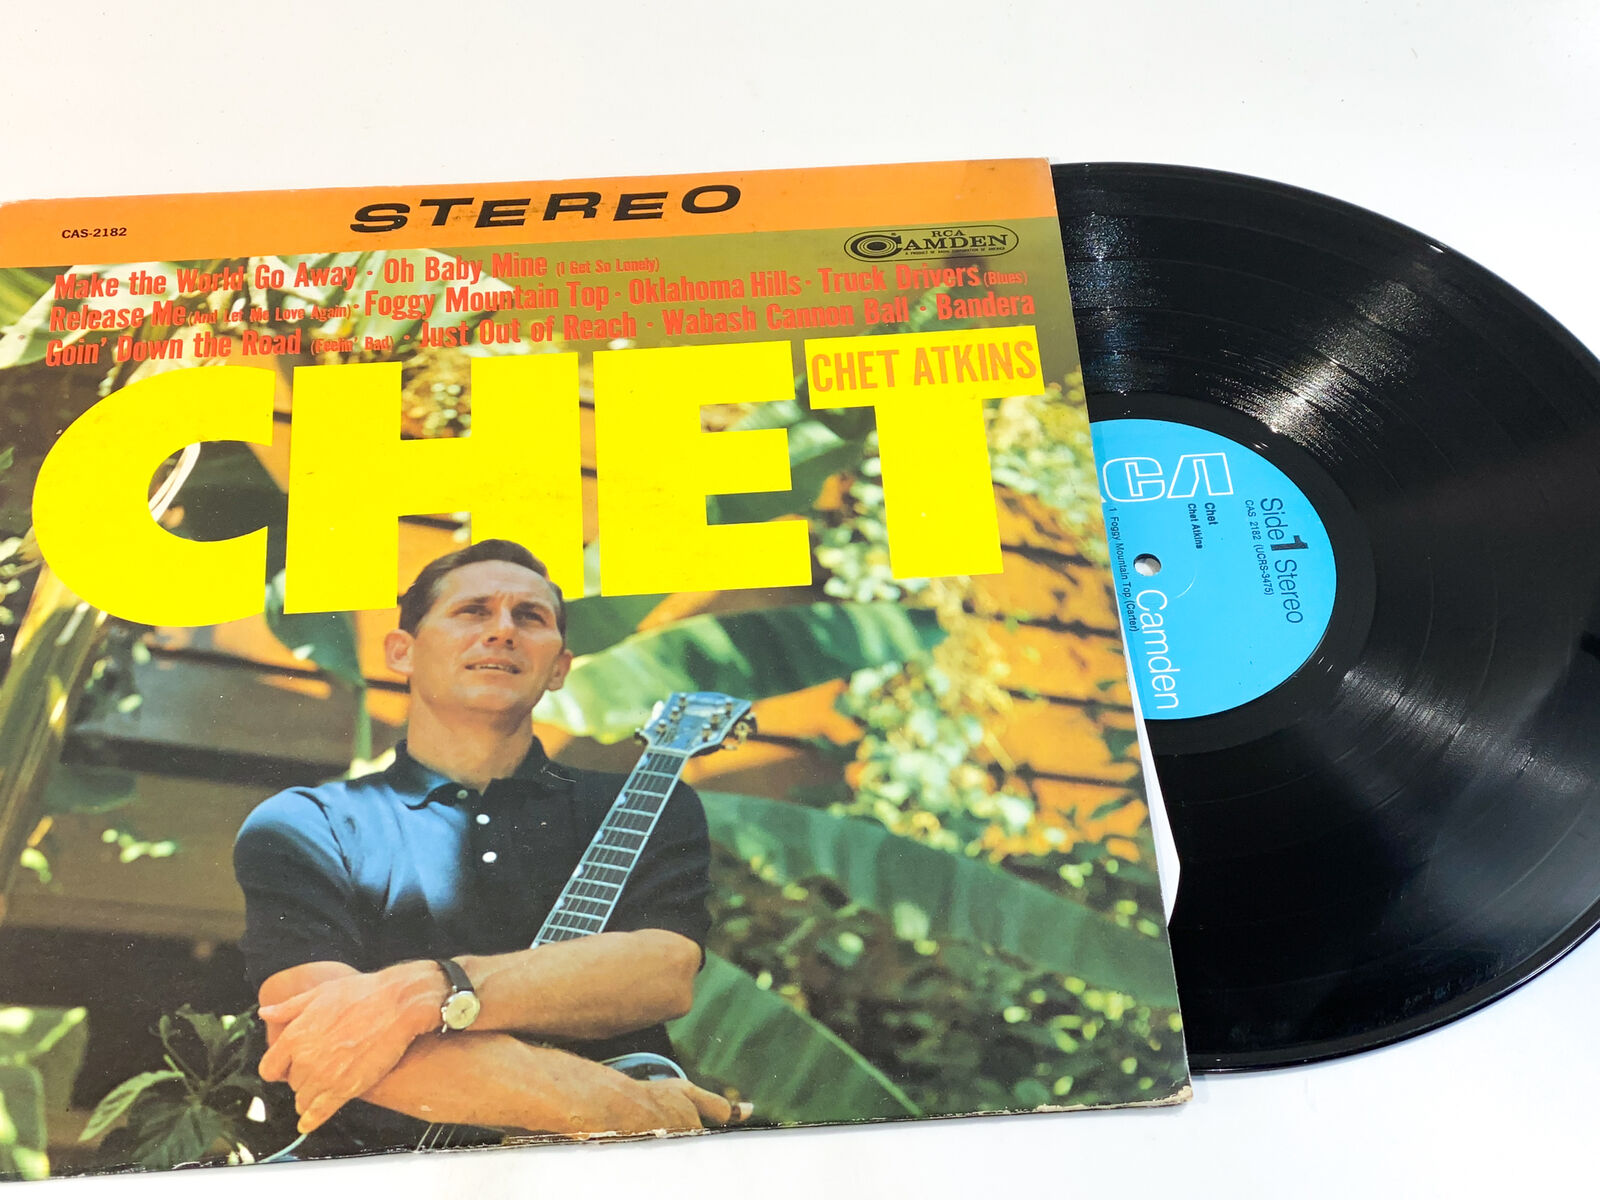 Chet Atkins - Chet VG+/EX Ultrasonic Clean